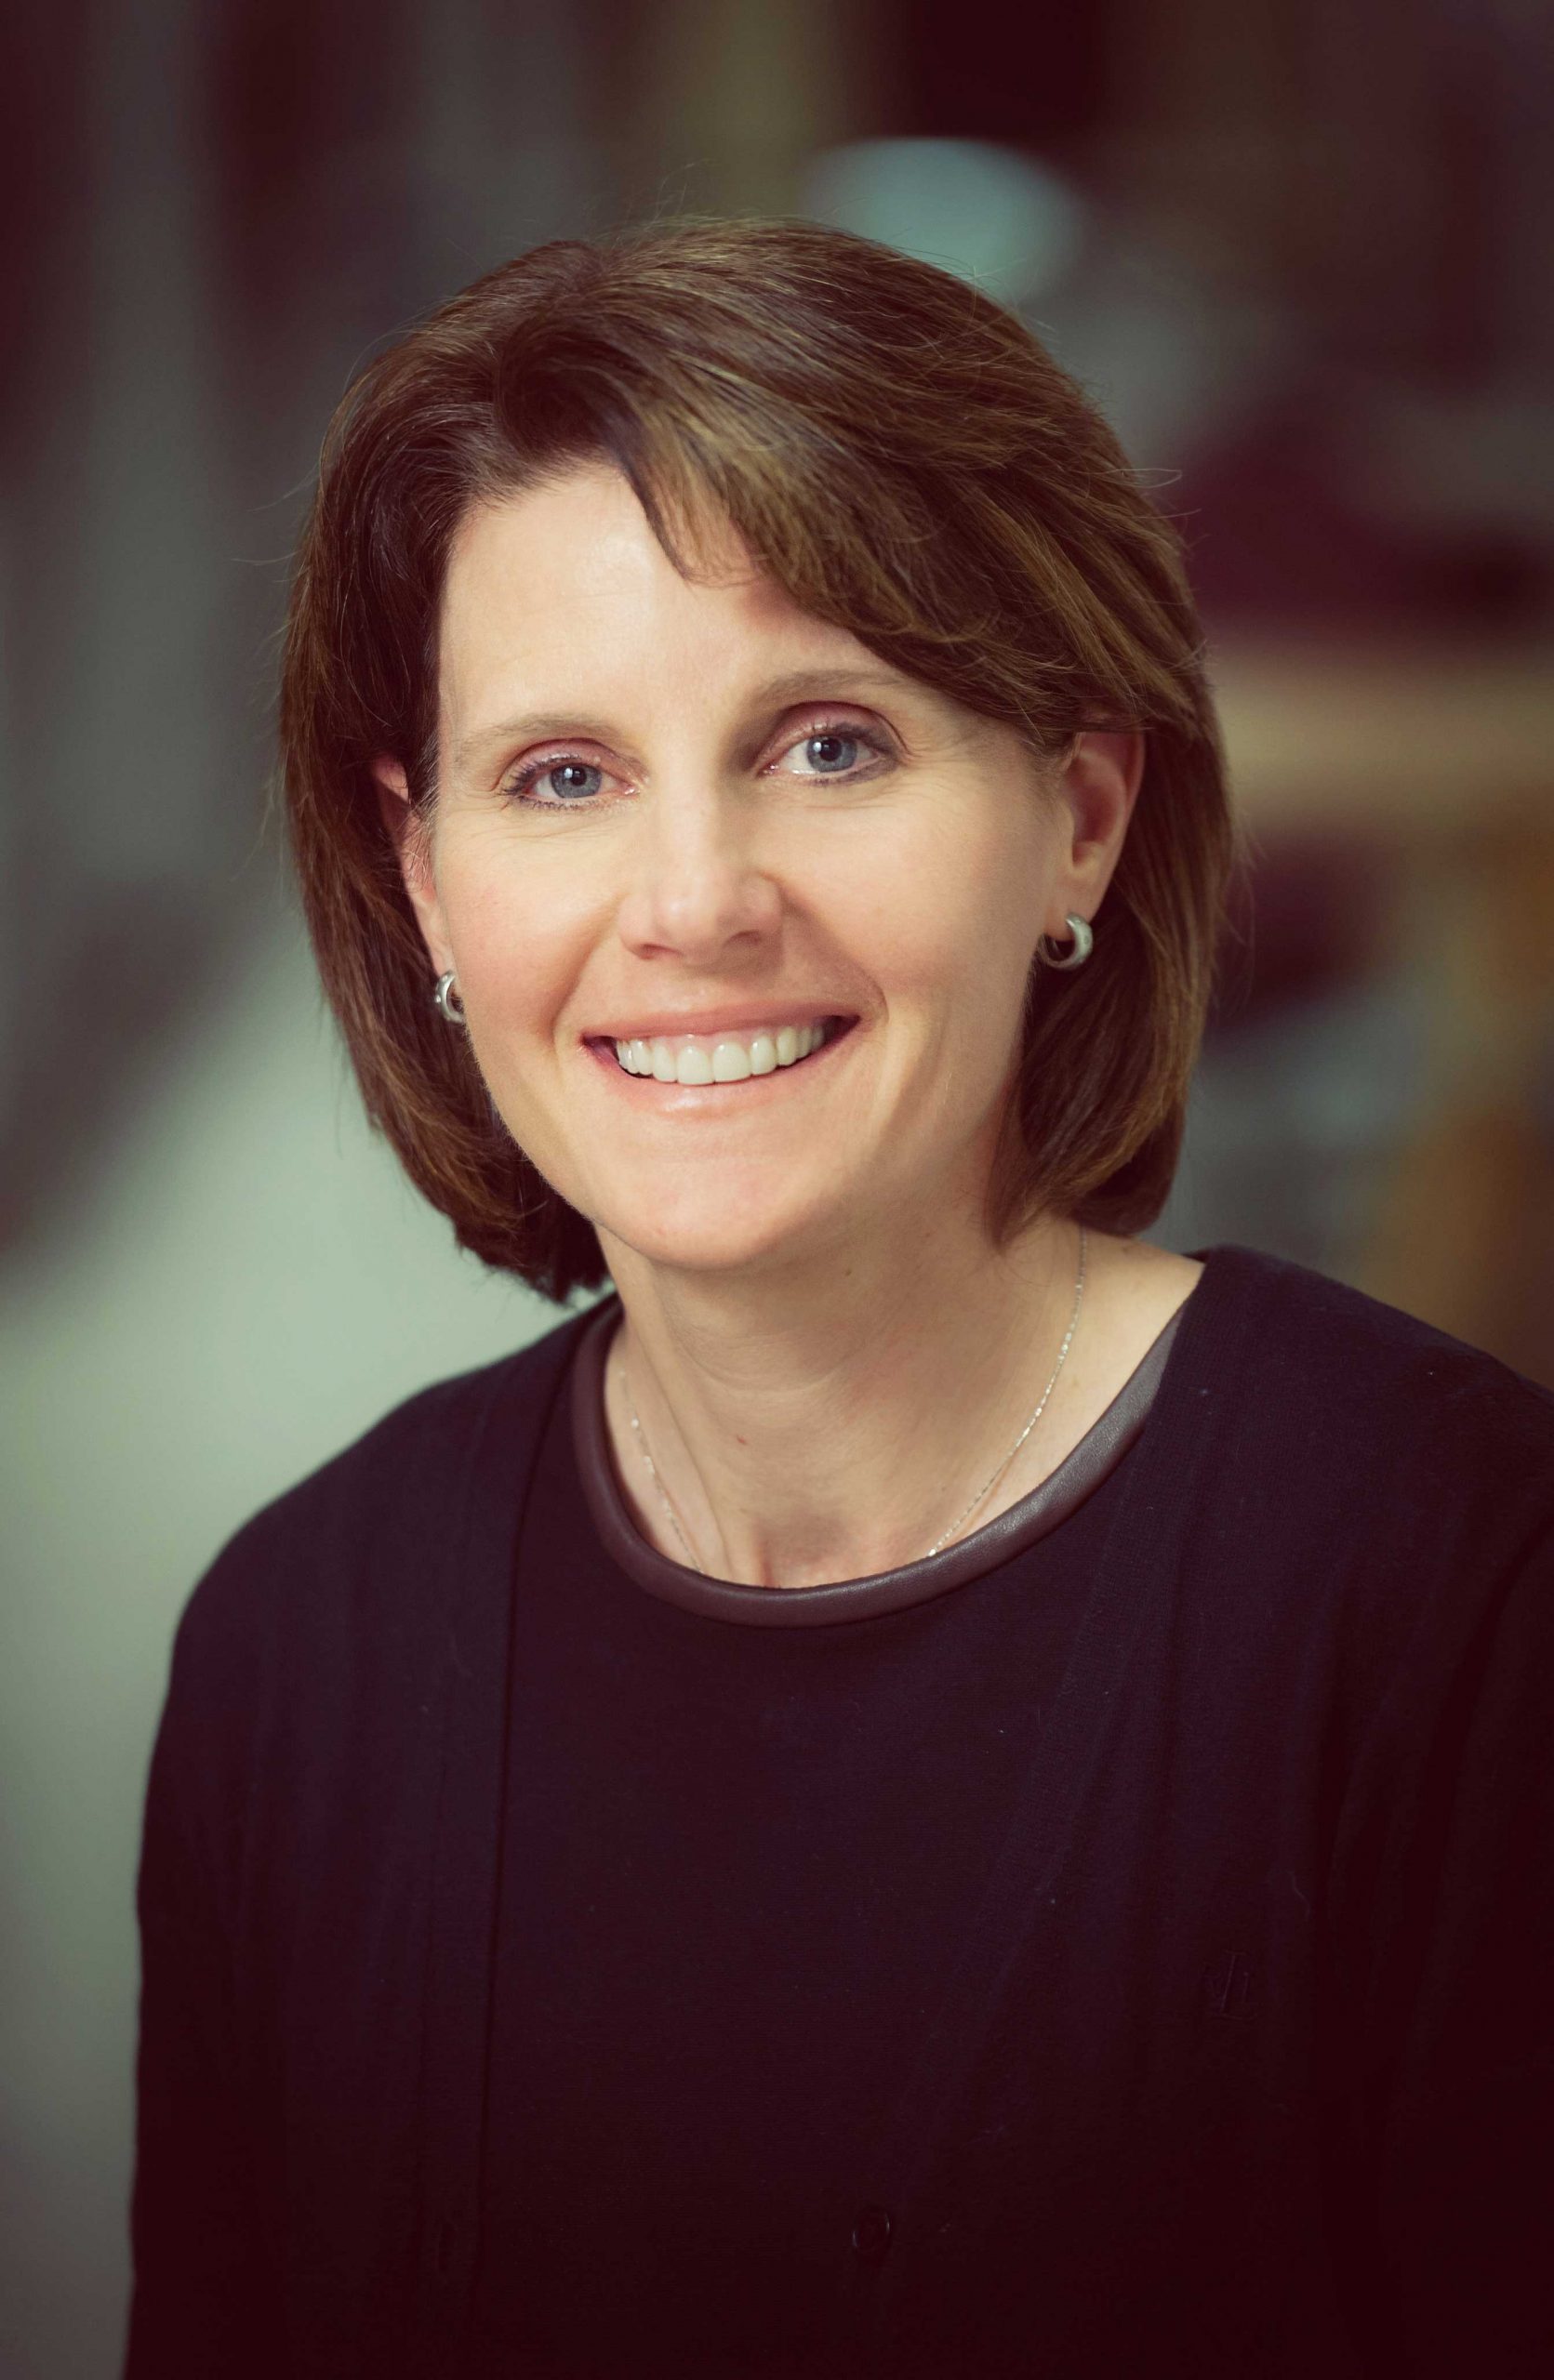 Dr. Lara Boyd